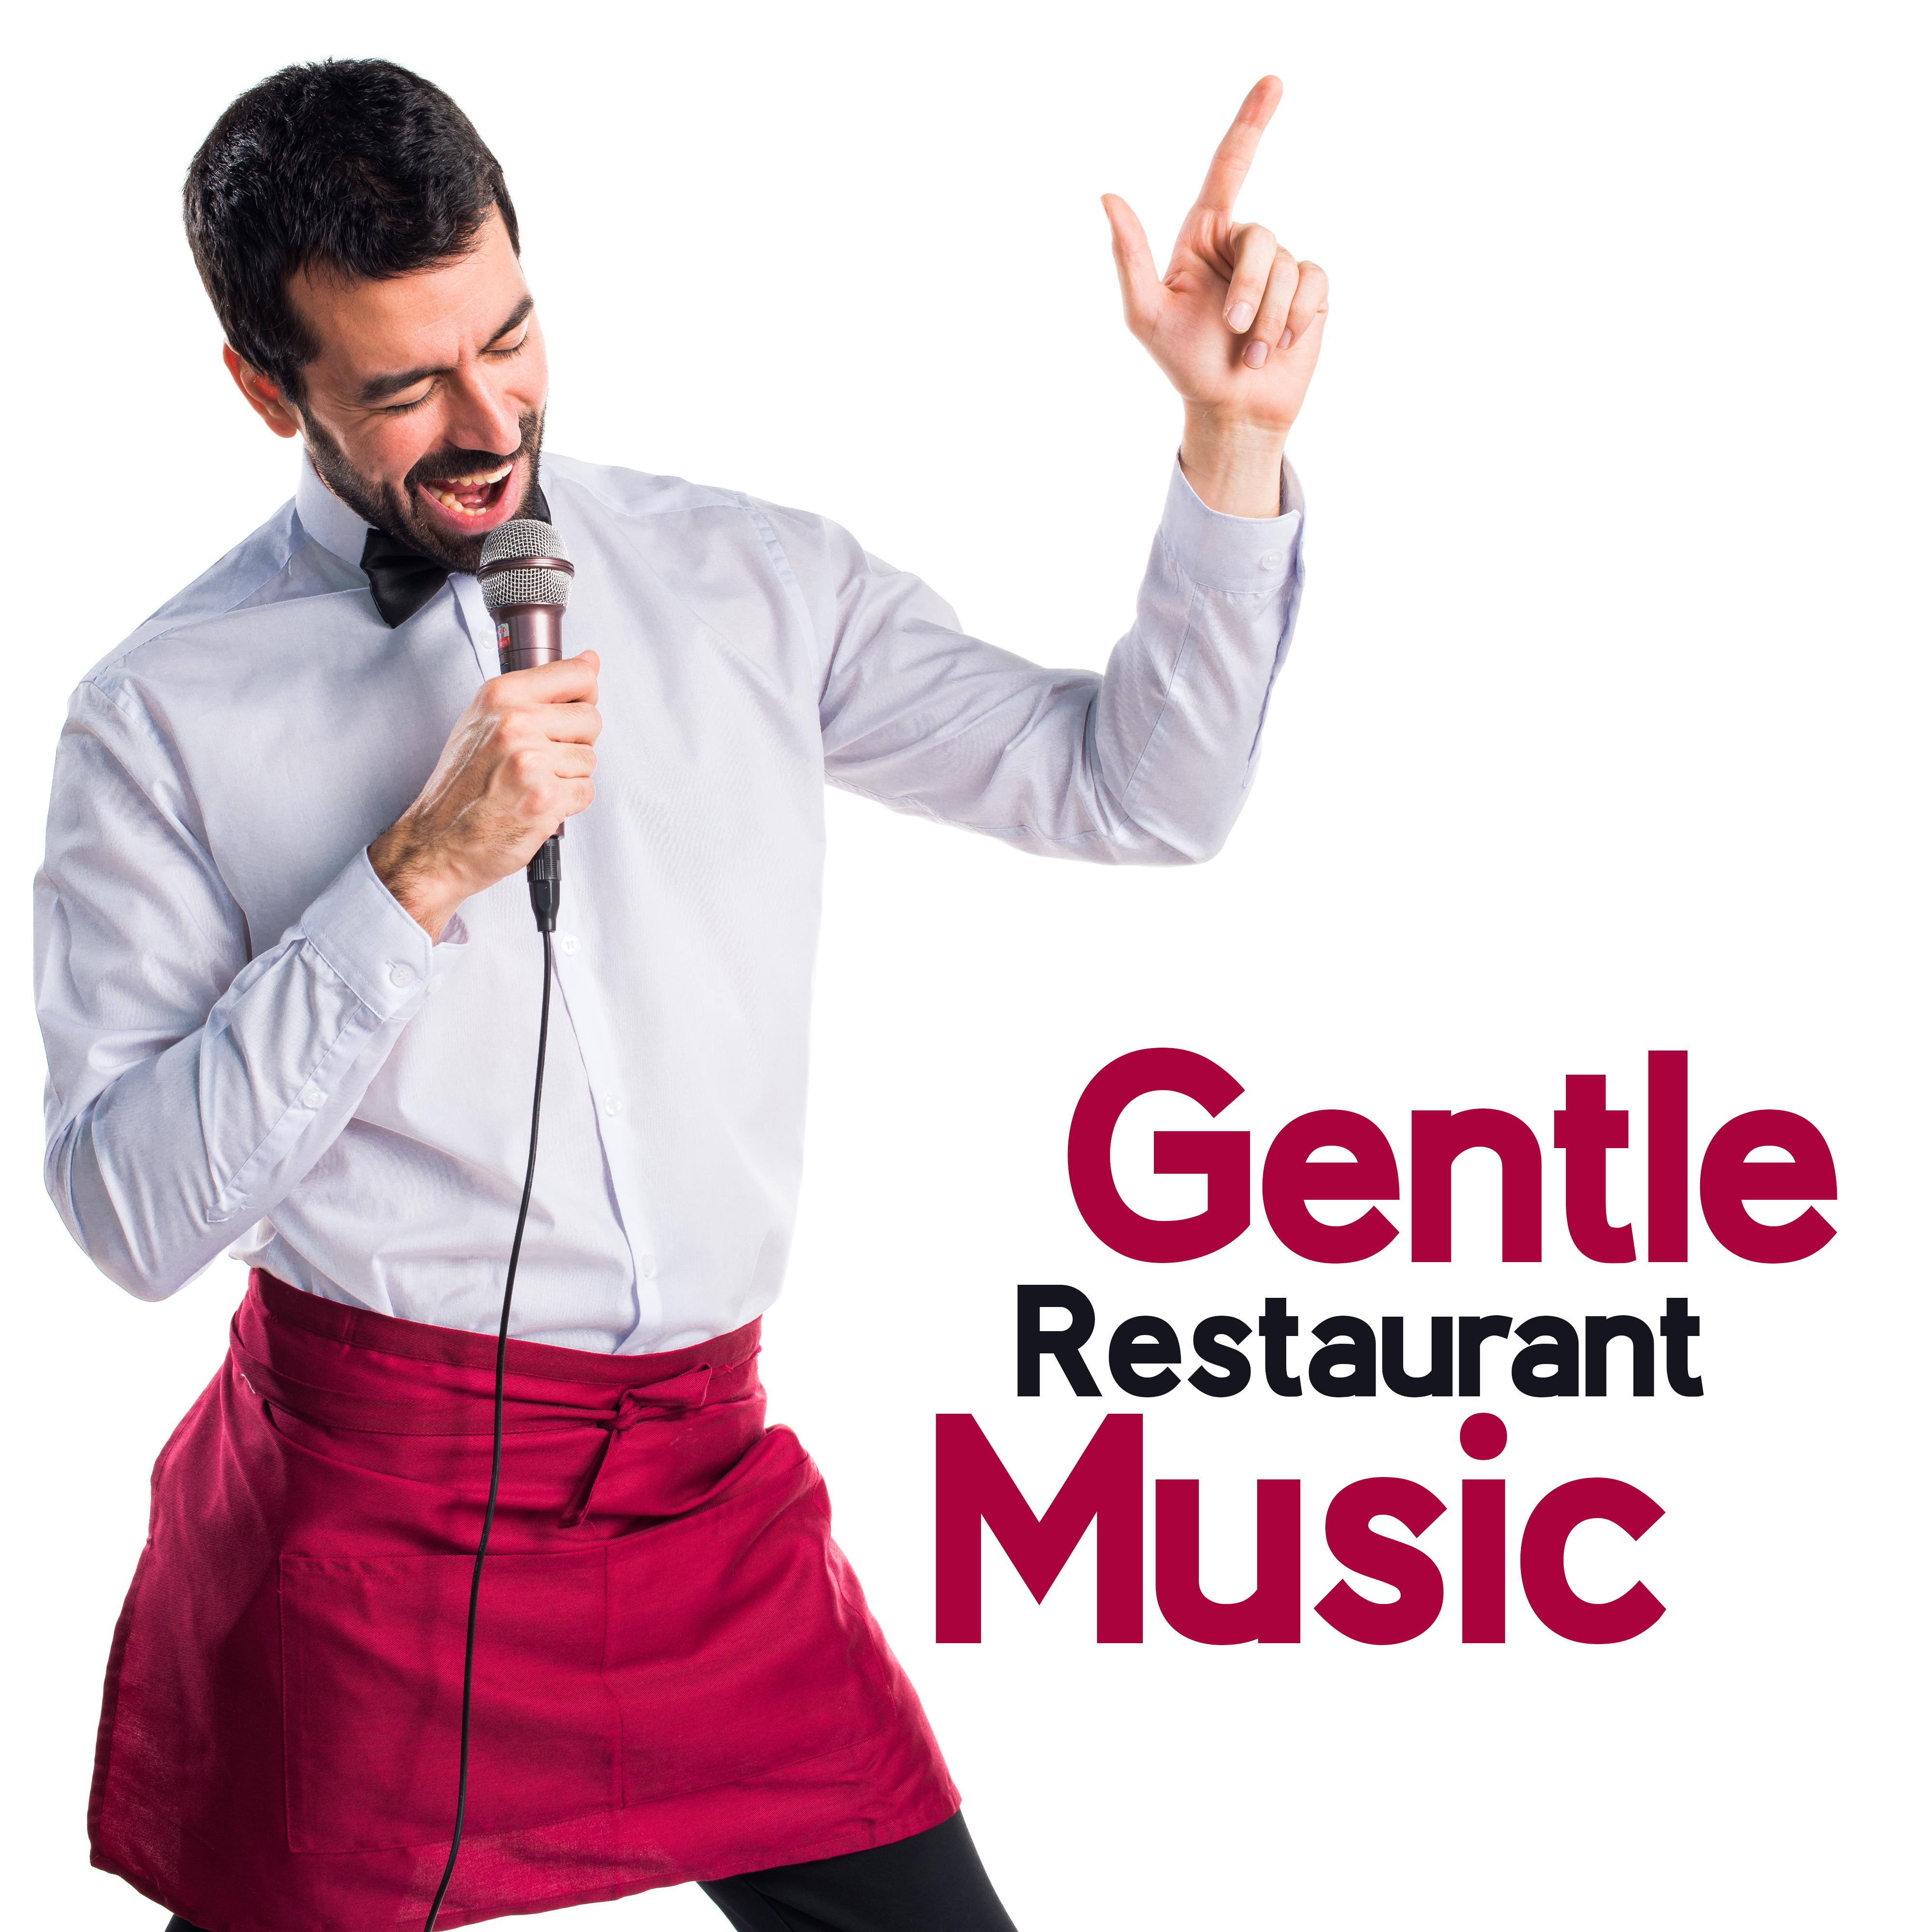 Gentle Restaurant Music